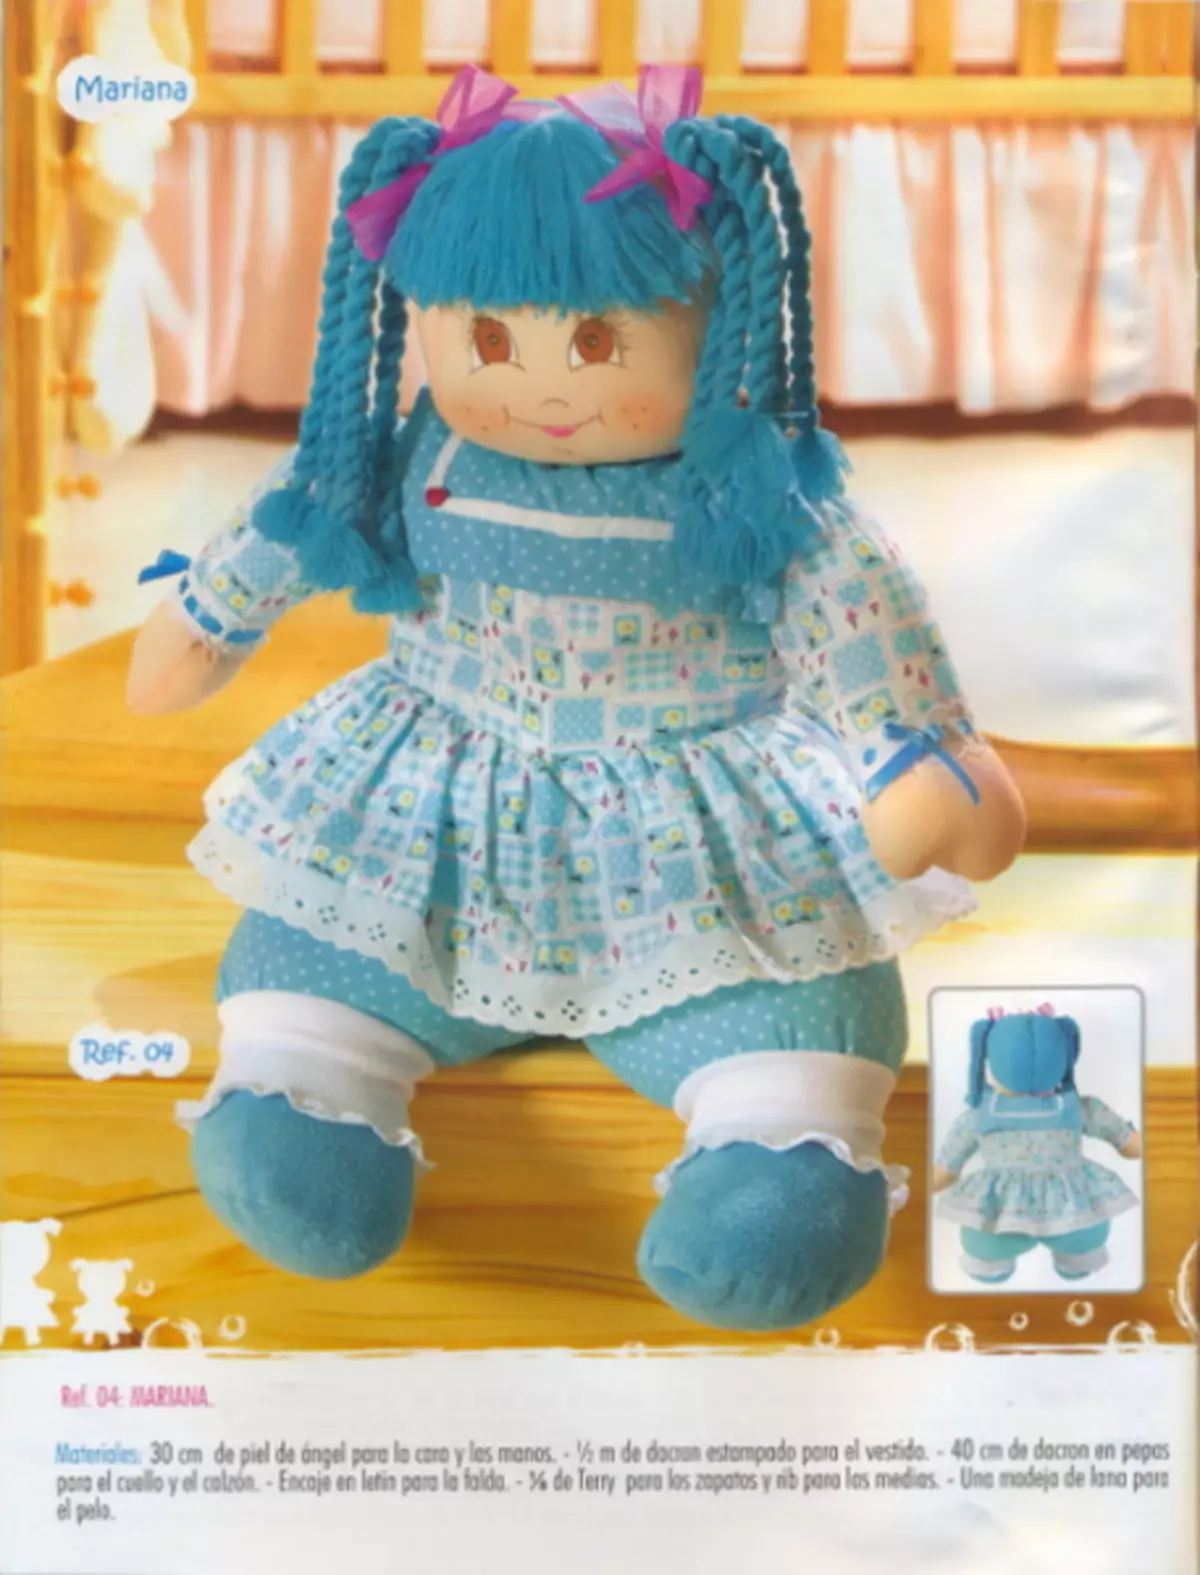 Quili - 135. Majalah dengan corak boneka tekstil